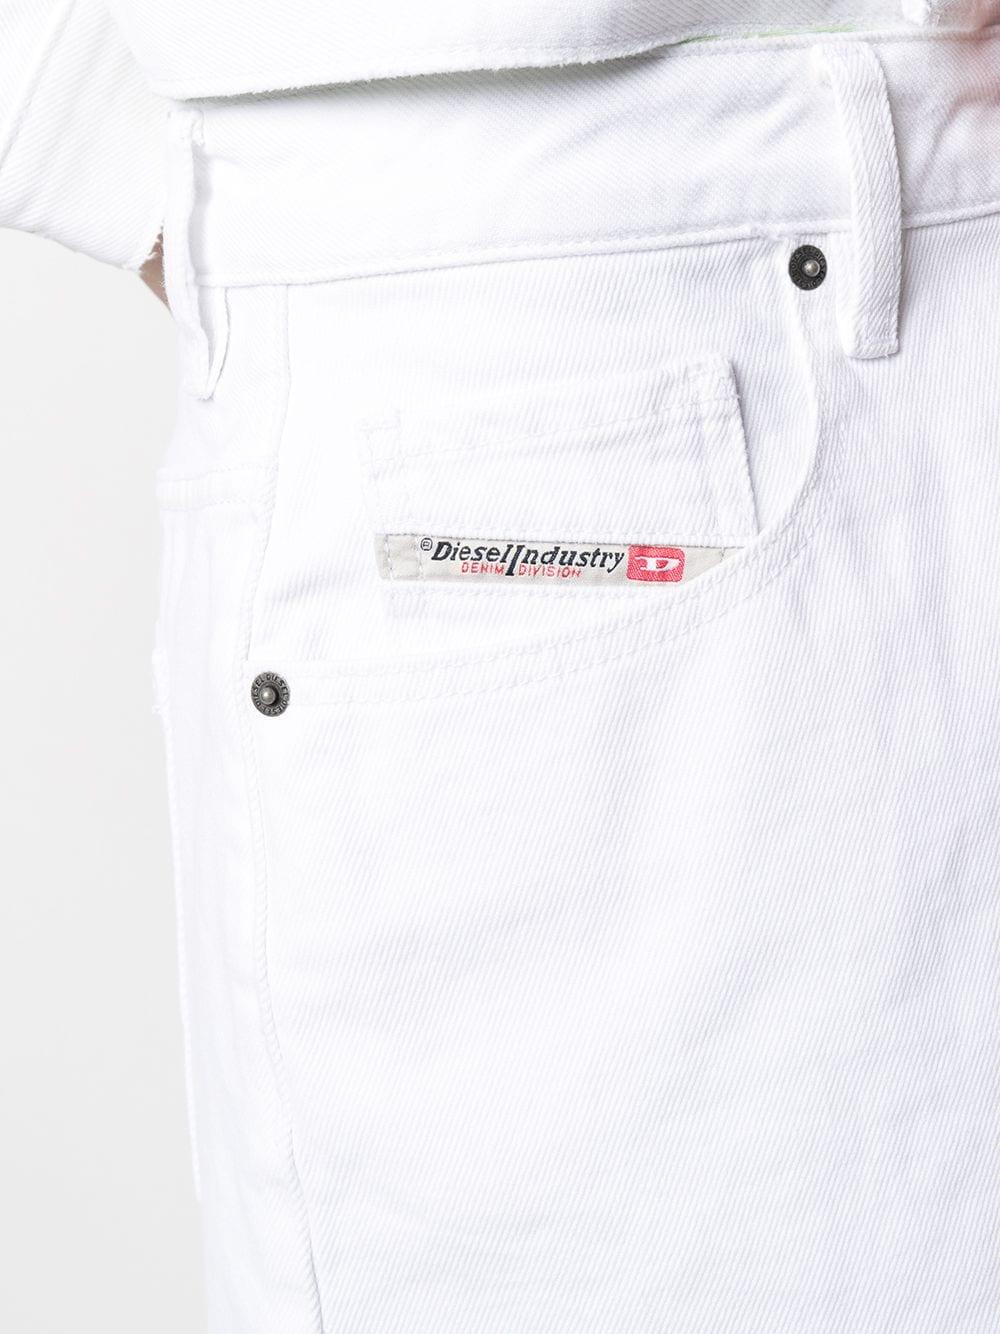 DIESEL Distressed Denim Shorts in White - Lyst